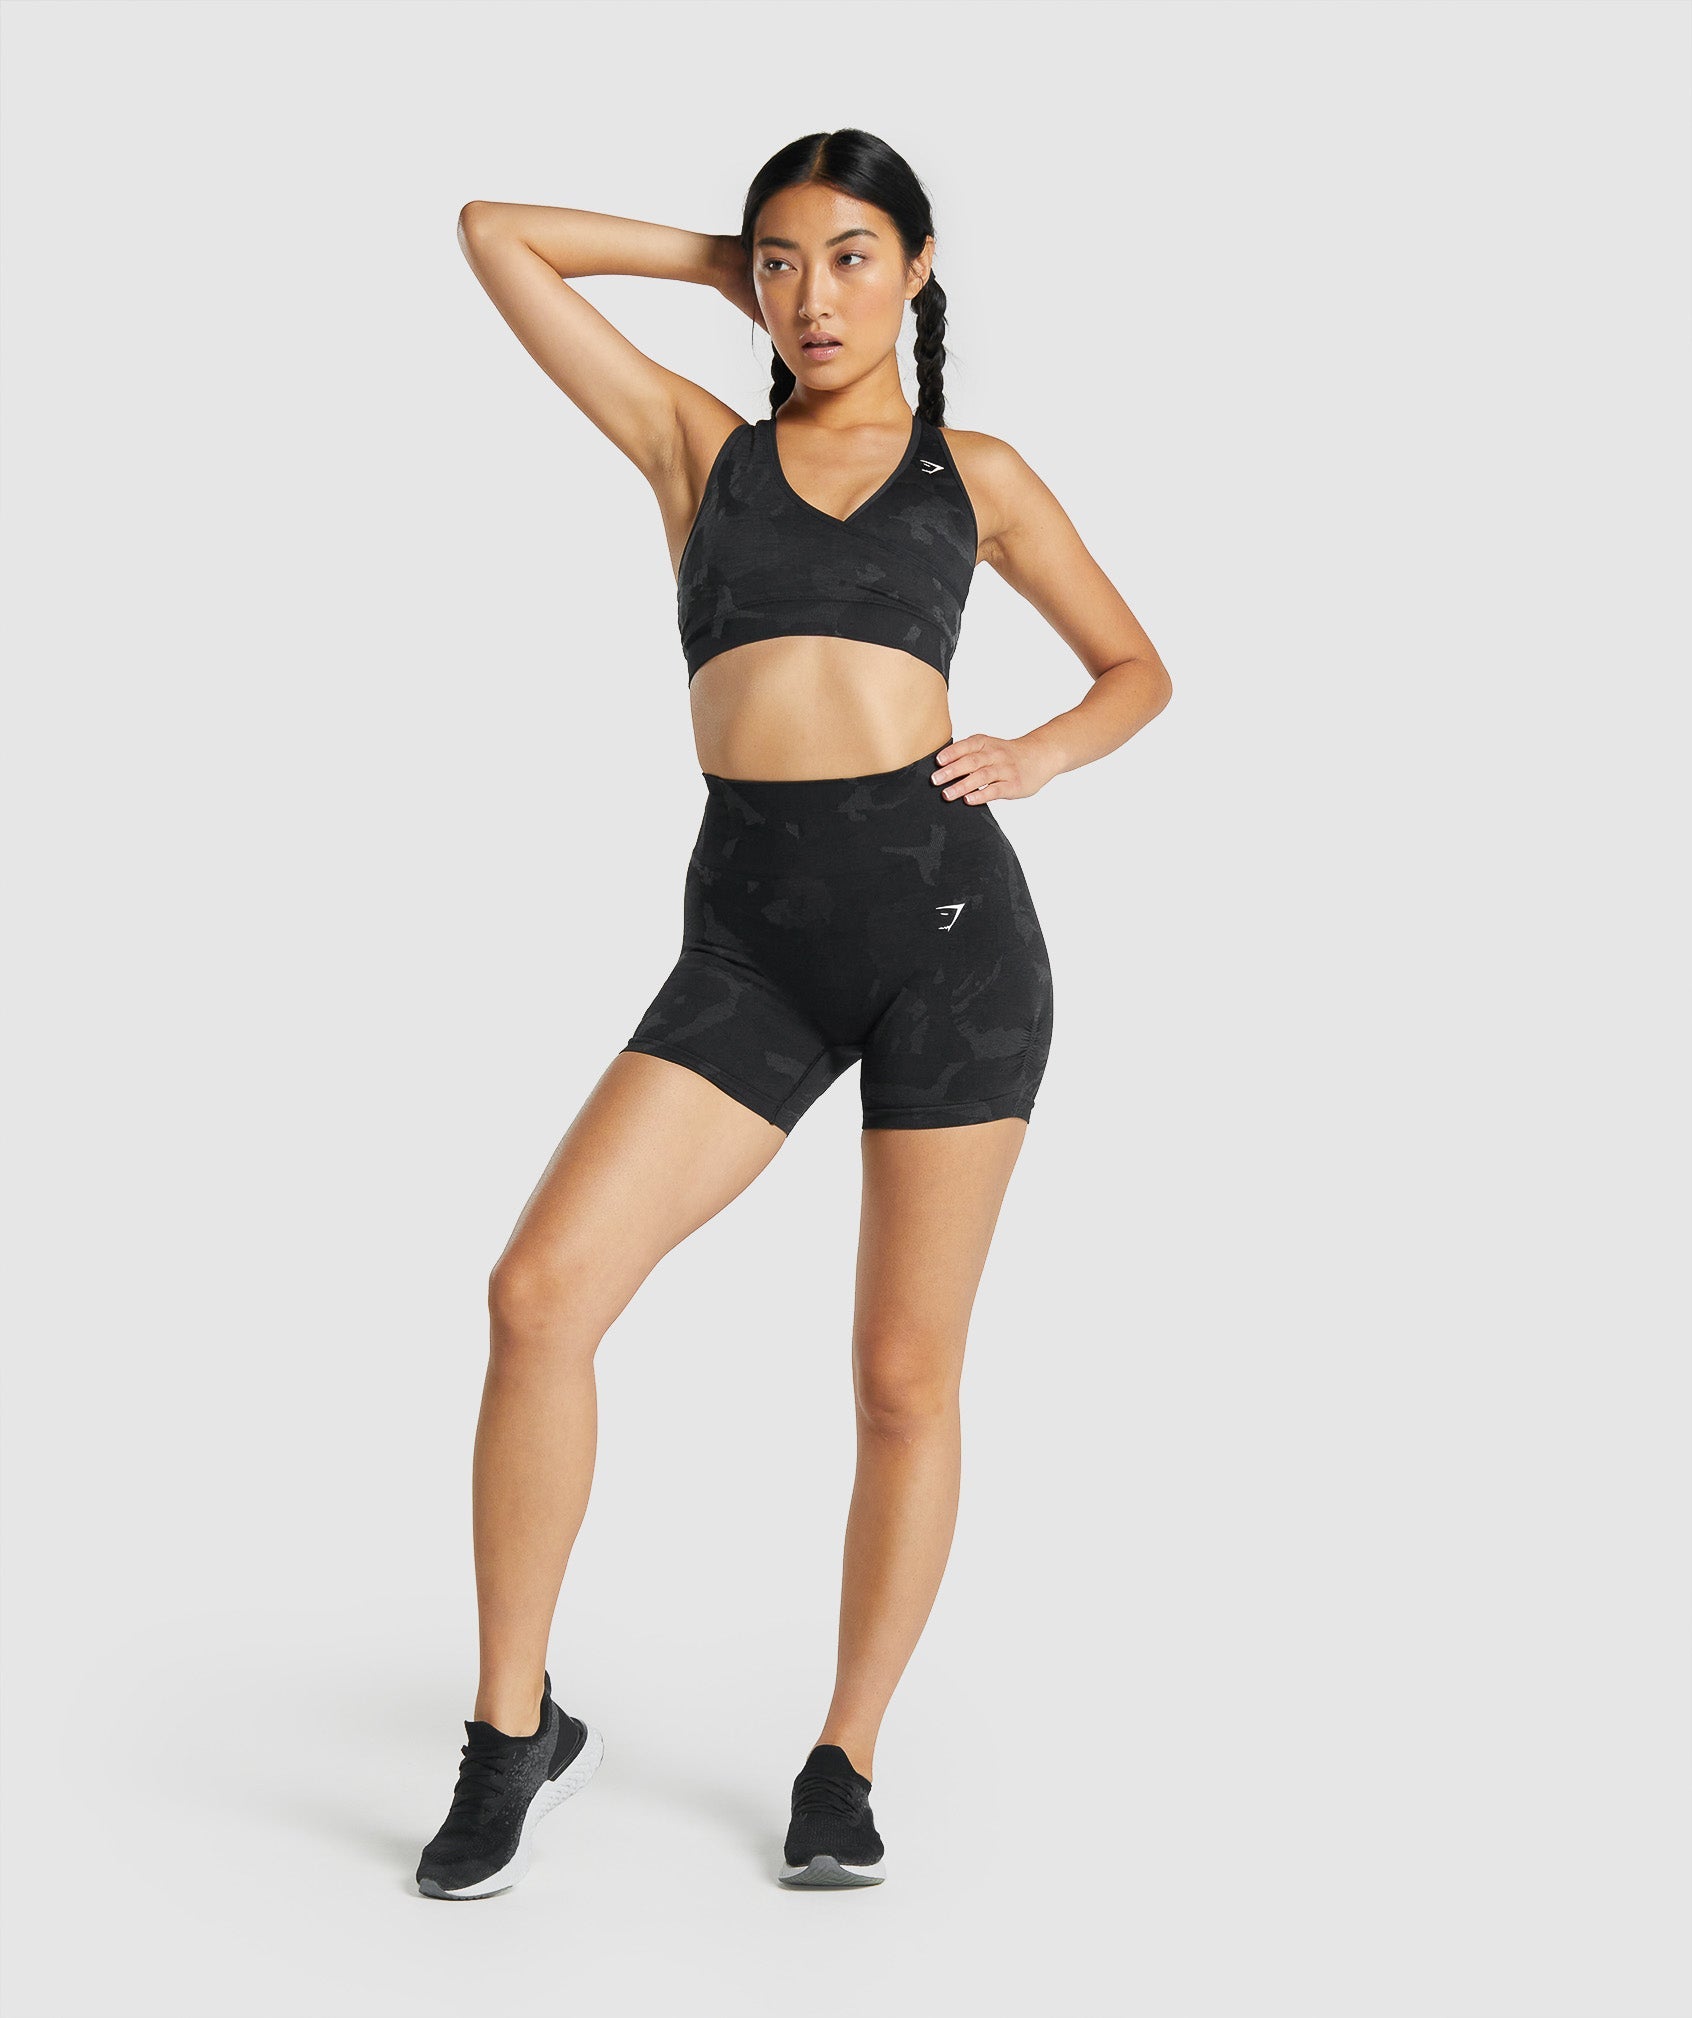 Gymshark Adapt camo seamless shorts Grey/Black Size large New